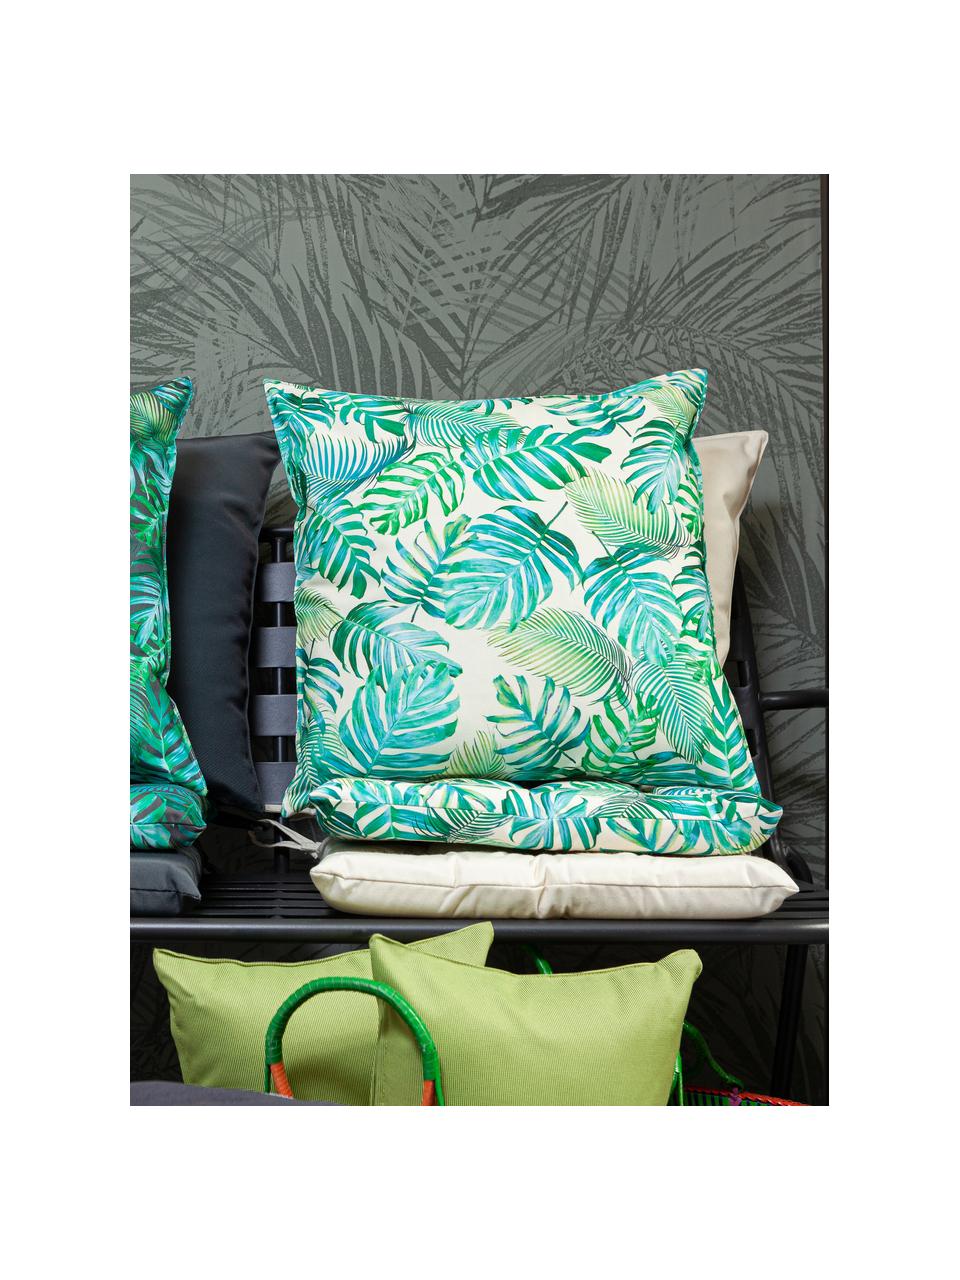 Outdoor-Sitzkissen Madeira mit Blattmuster, 100% Polyester, Gebrochenes Weiss, Blautöne, Grüntöne, 40 x 40 cm